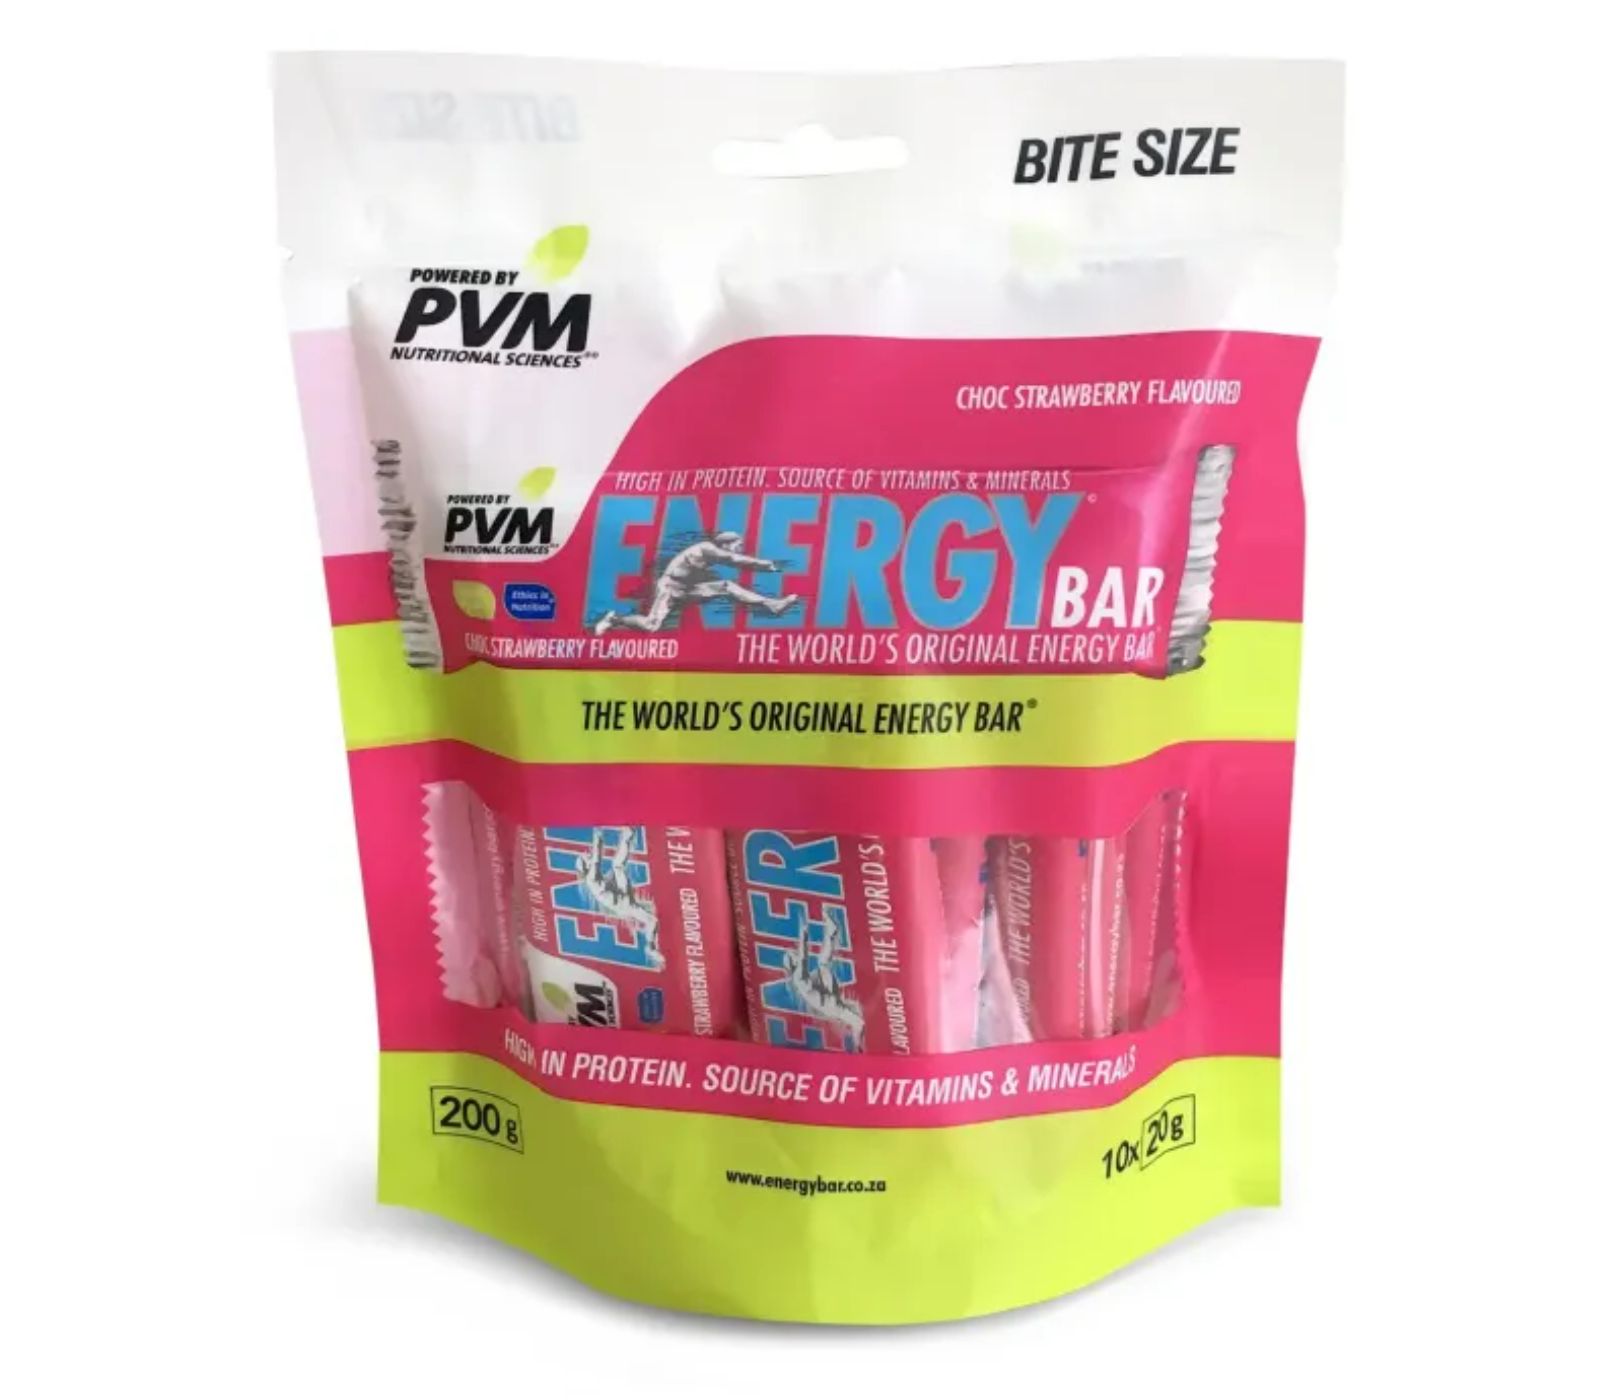 PVM Bite Size Energy Bars 20g - Bag of 10